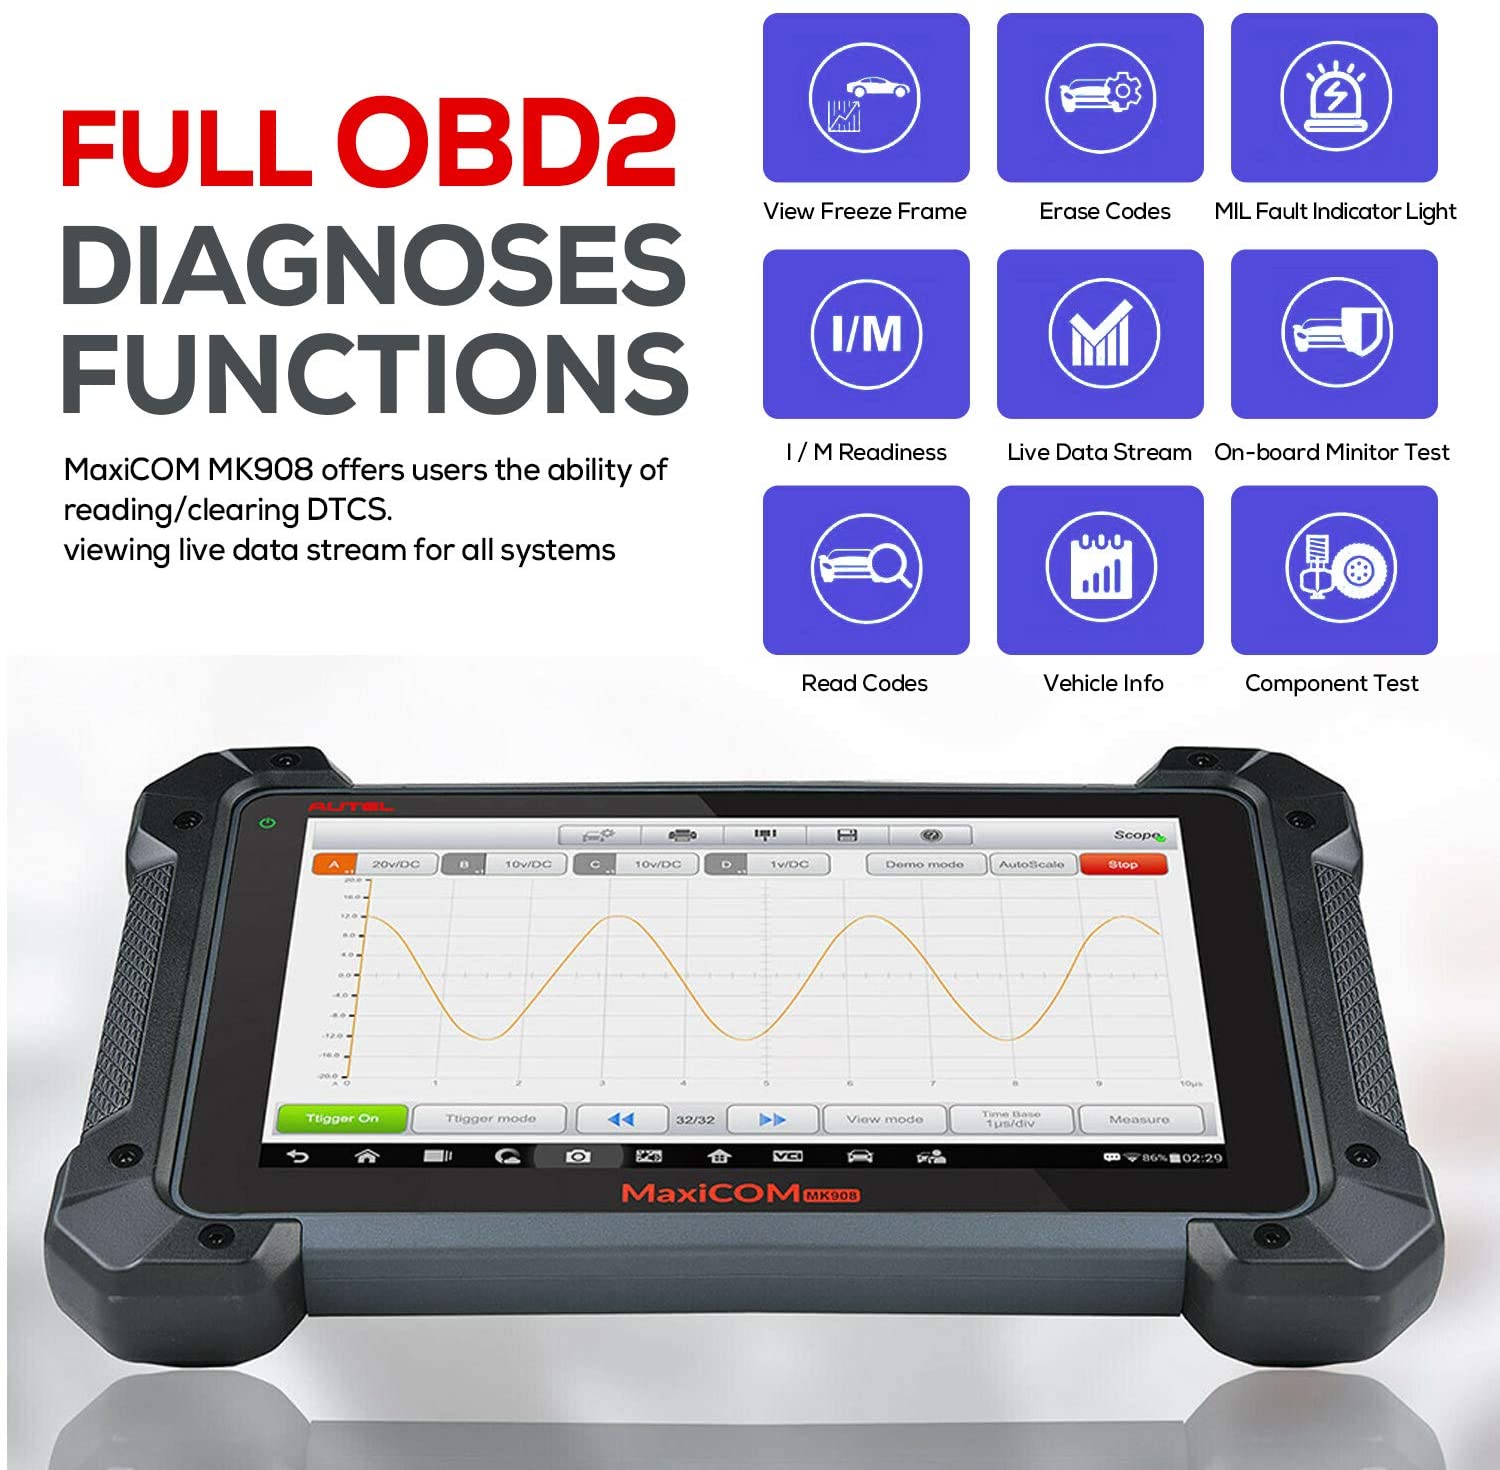 Autel Maxicom MK908 has full OBD2  diagnose functions